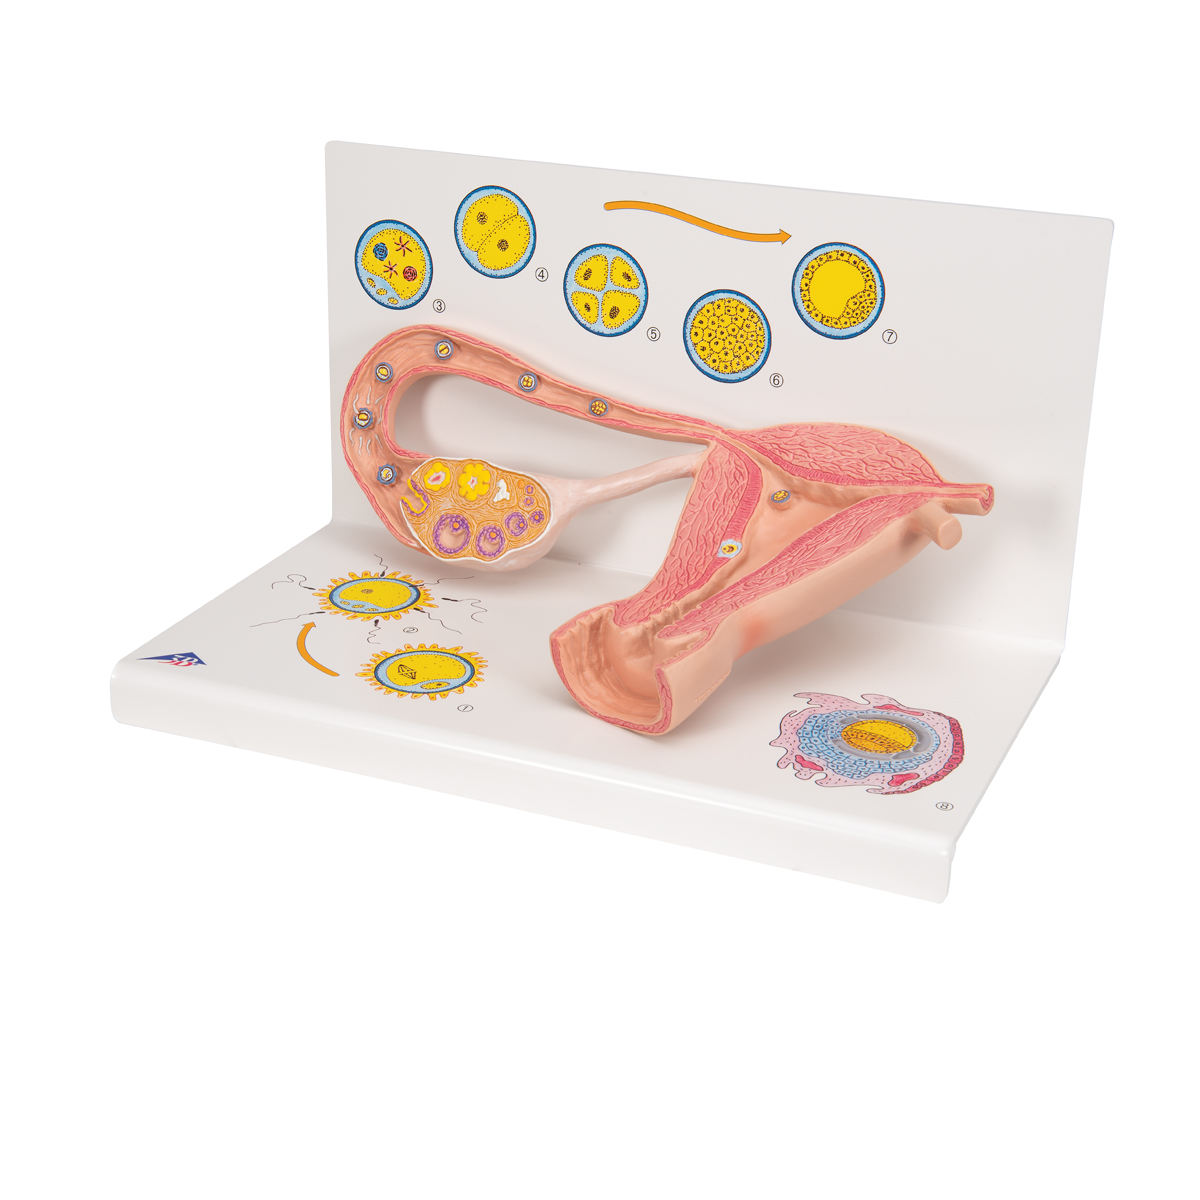 Ovare cu trompe uterine - prezentare stagii de fertilizare, material didactic biologie